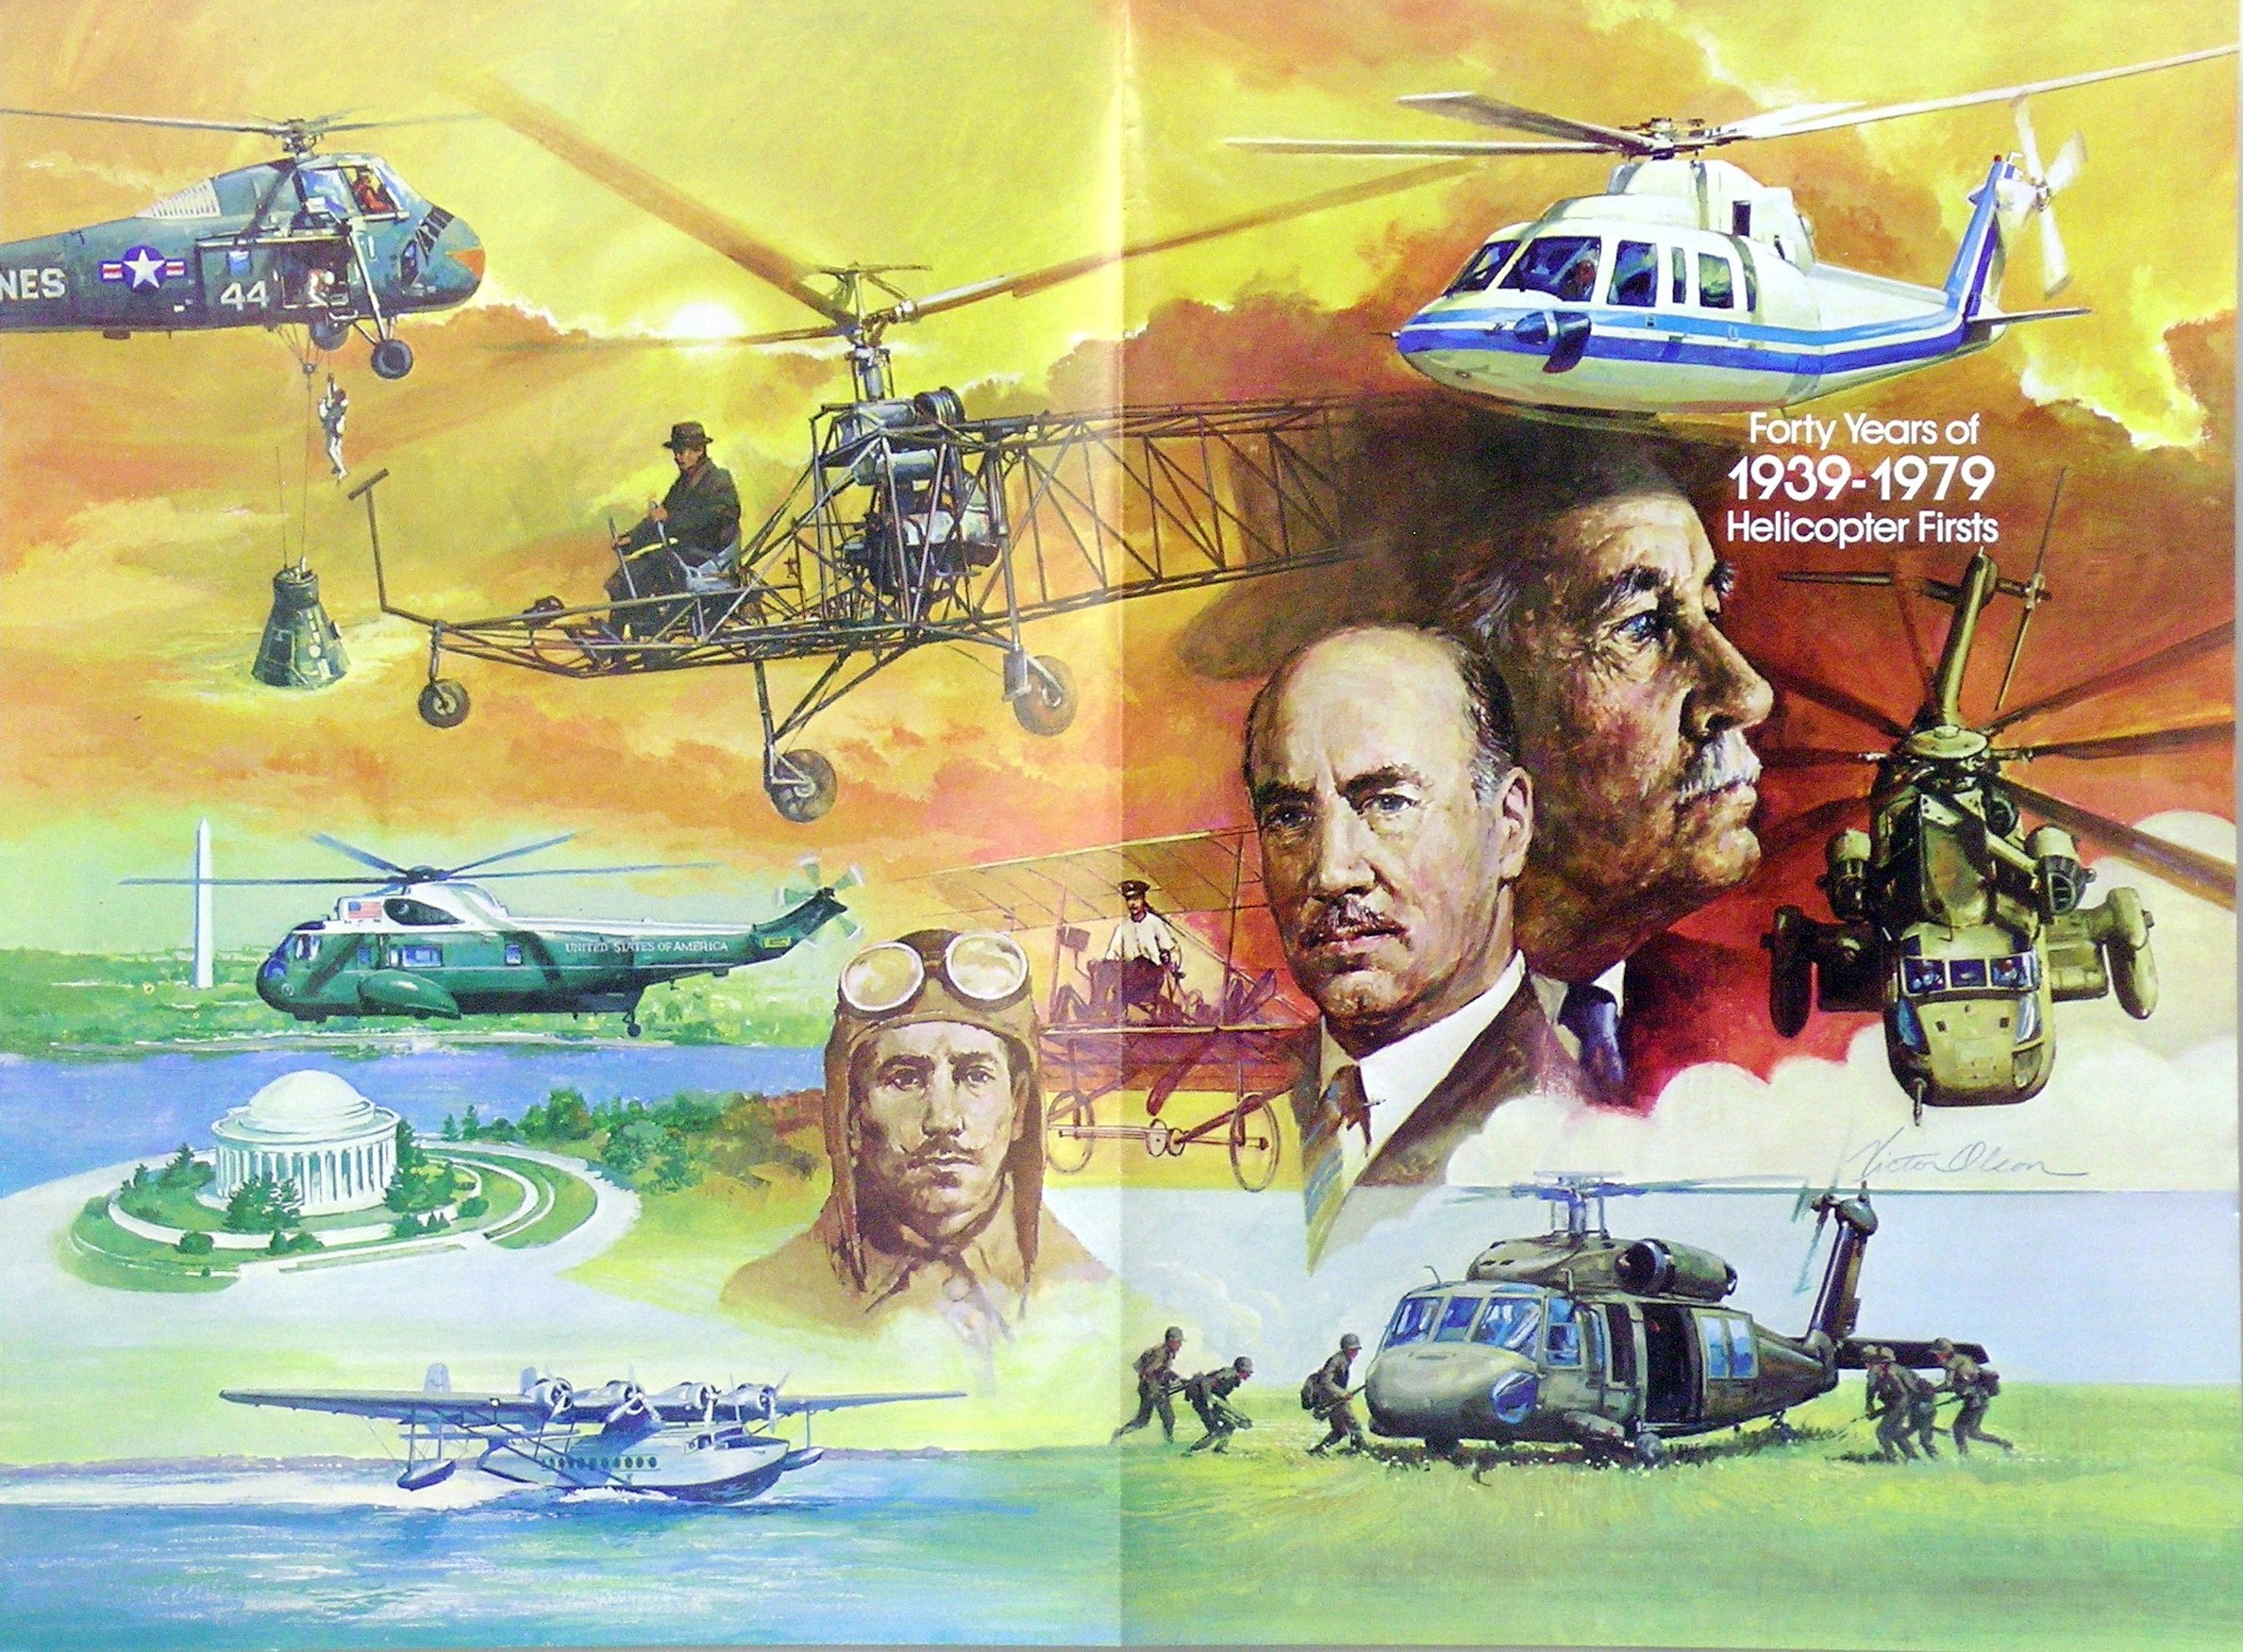 Постер кольоровий "Сорок років від перших гелікоптерів 1939-1979 років" 